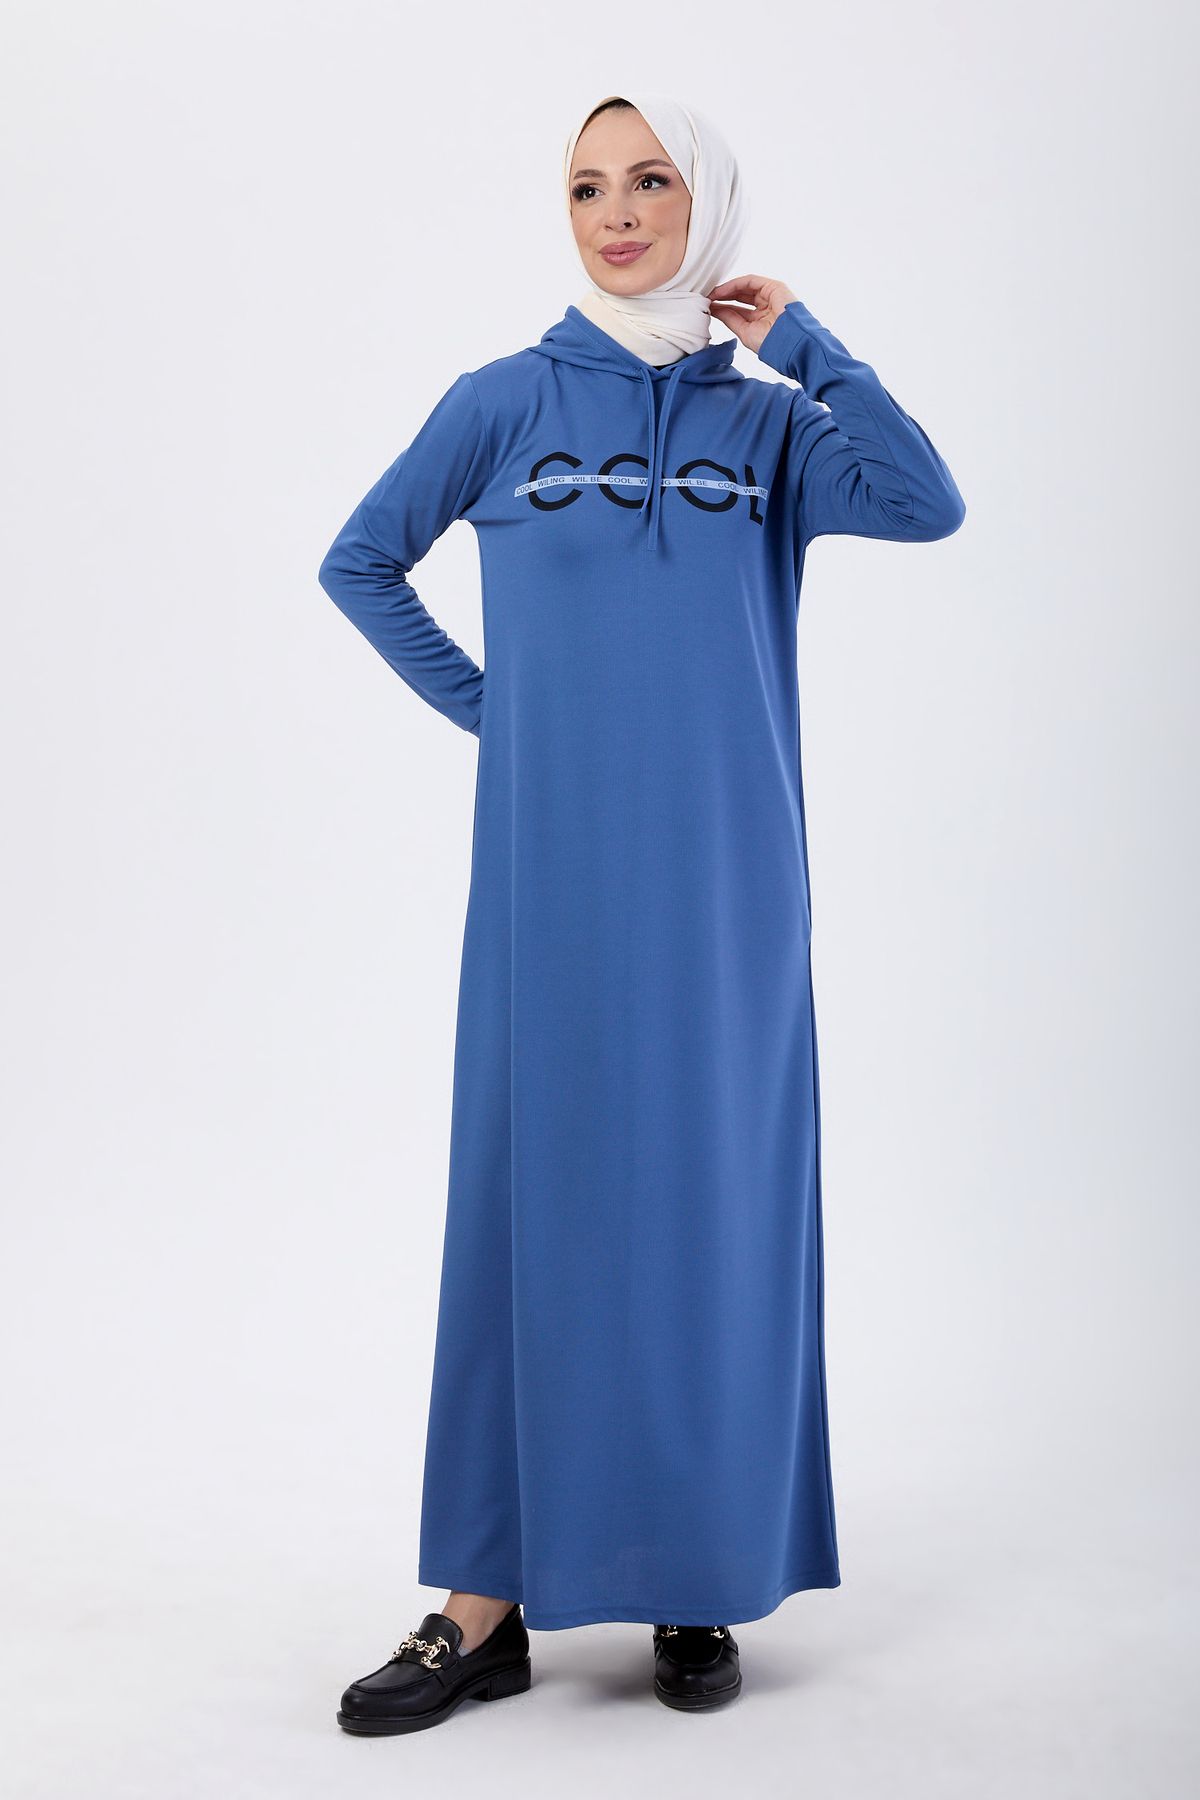 TOFİSA Düz Kapşonlu Yaka Kadın Mavi Elbise - 13089